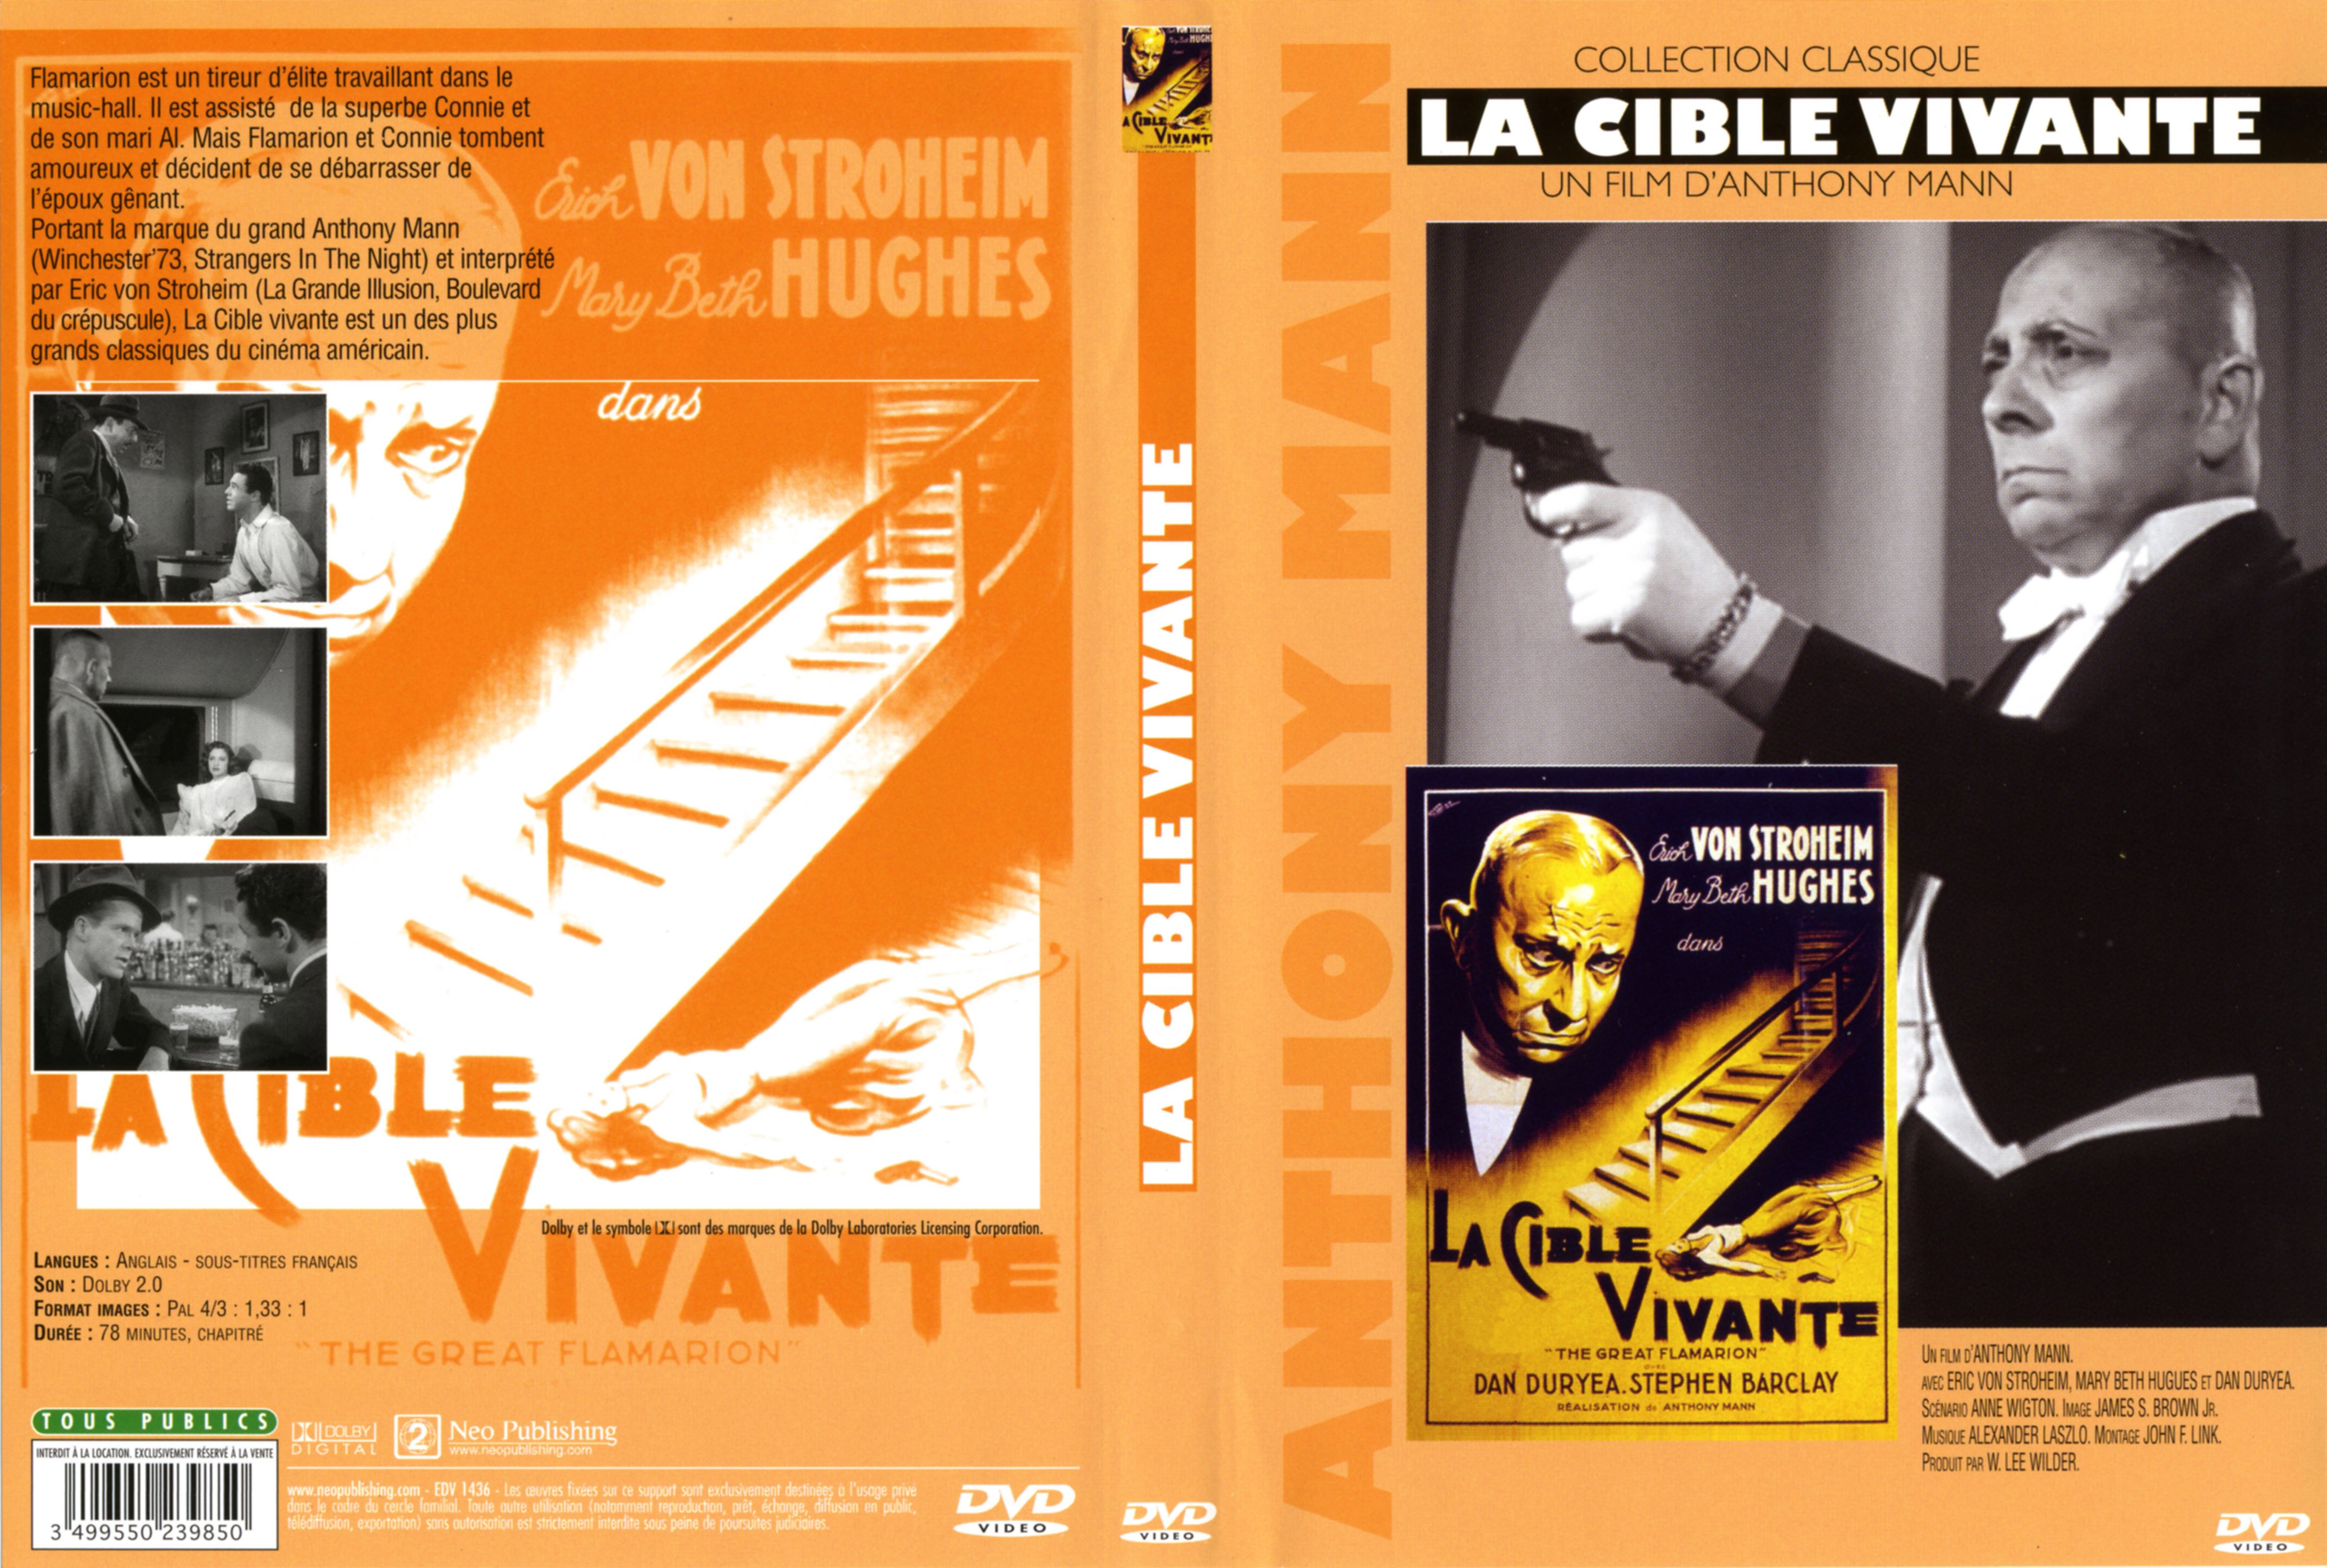 Jaquette DVD La cible vivante